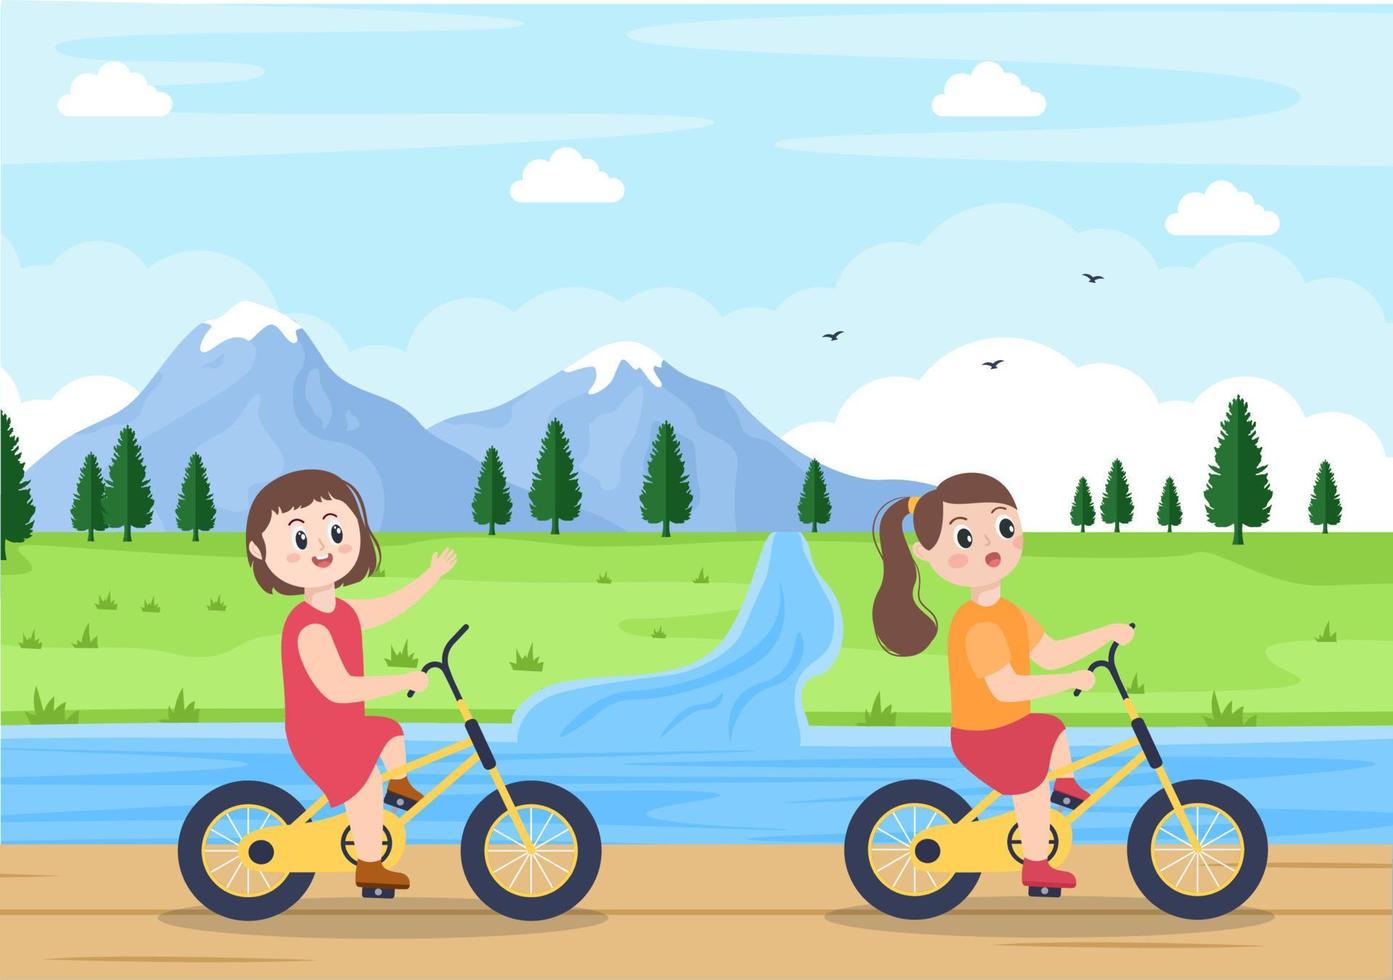 cykel vektor platt illustration. människor som cyklar, sporter och utomhusaktiviteter på parkväg eller motorväg lever en hälsosam livsstil